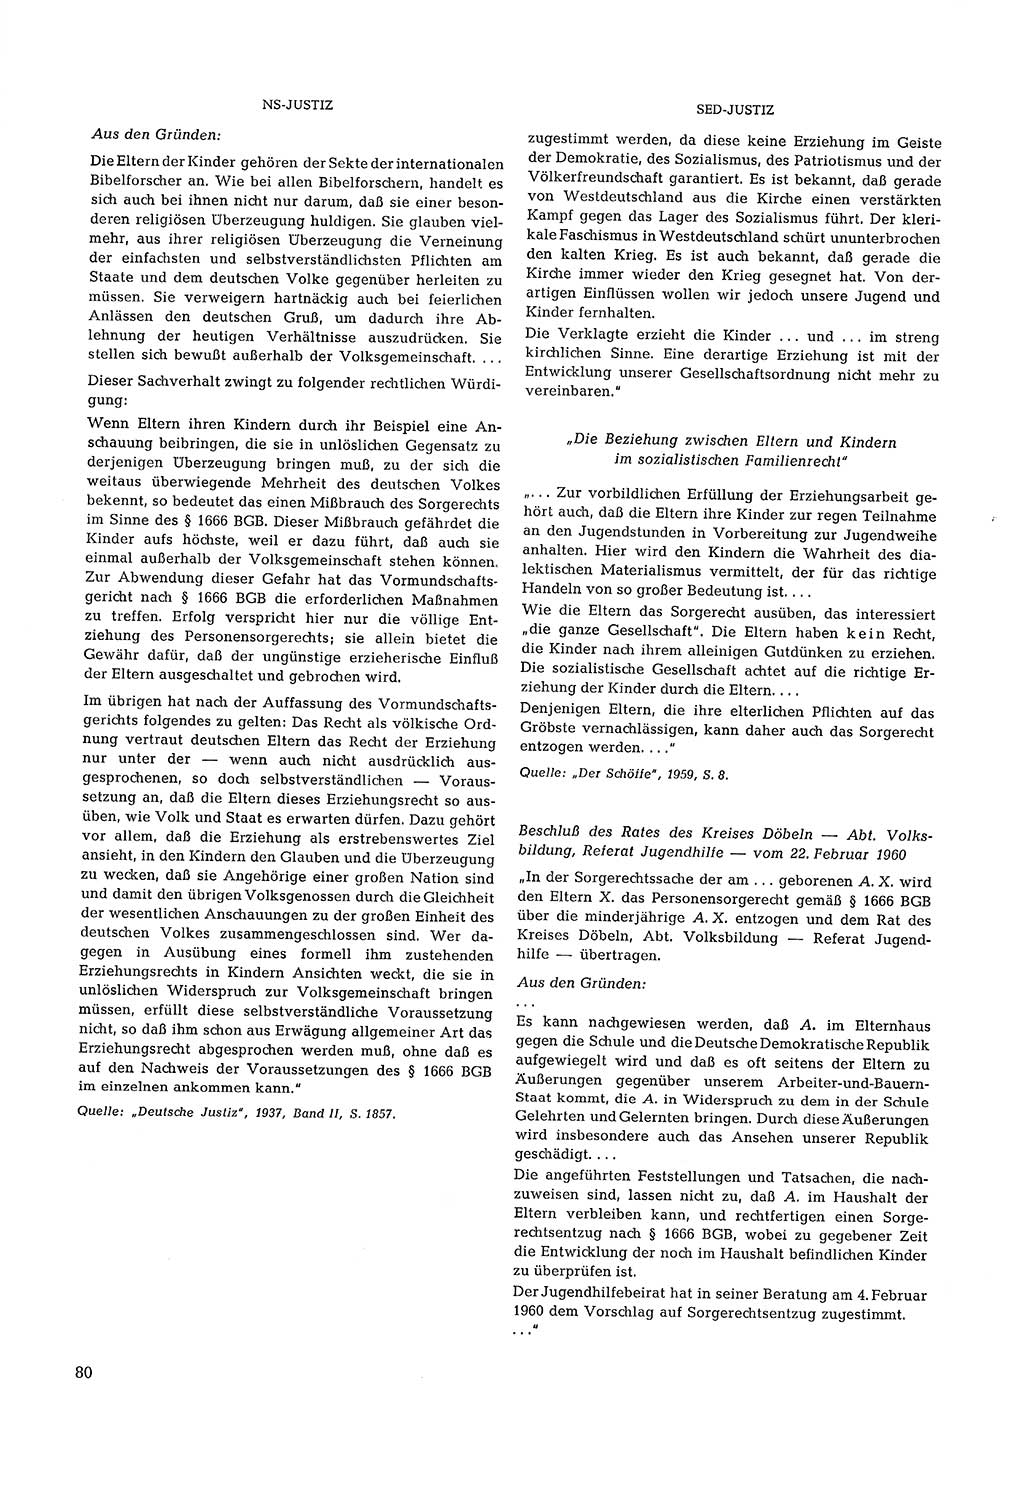 Partei-Justiz, Dokumentation über den nationalsozialistischen und kommunistischen Rechtsmißbrauch in Deutschland 1933-1963, Seite 80 (Part.-Just. Dtl. natsoz. komm. 1933-1963, S. 80)